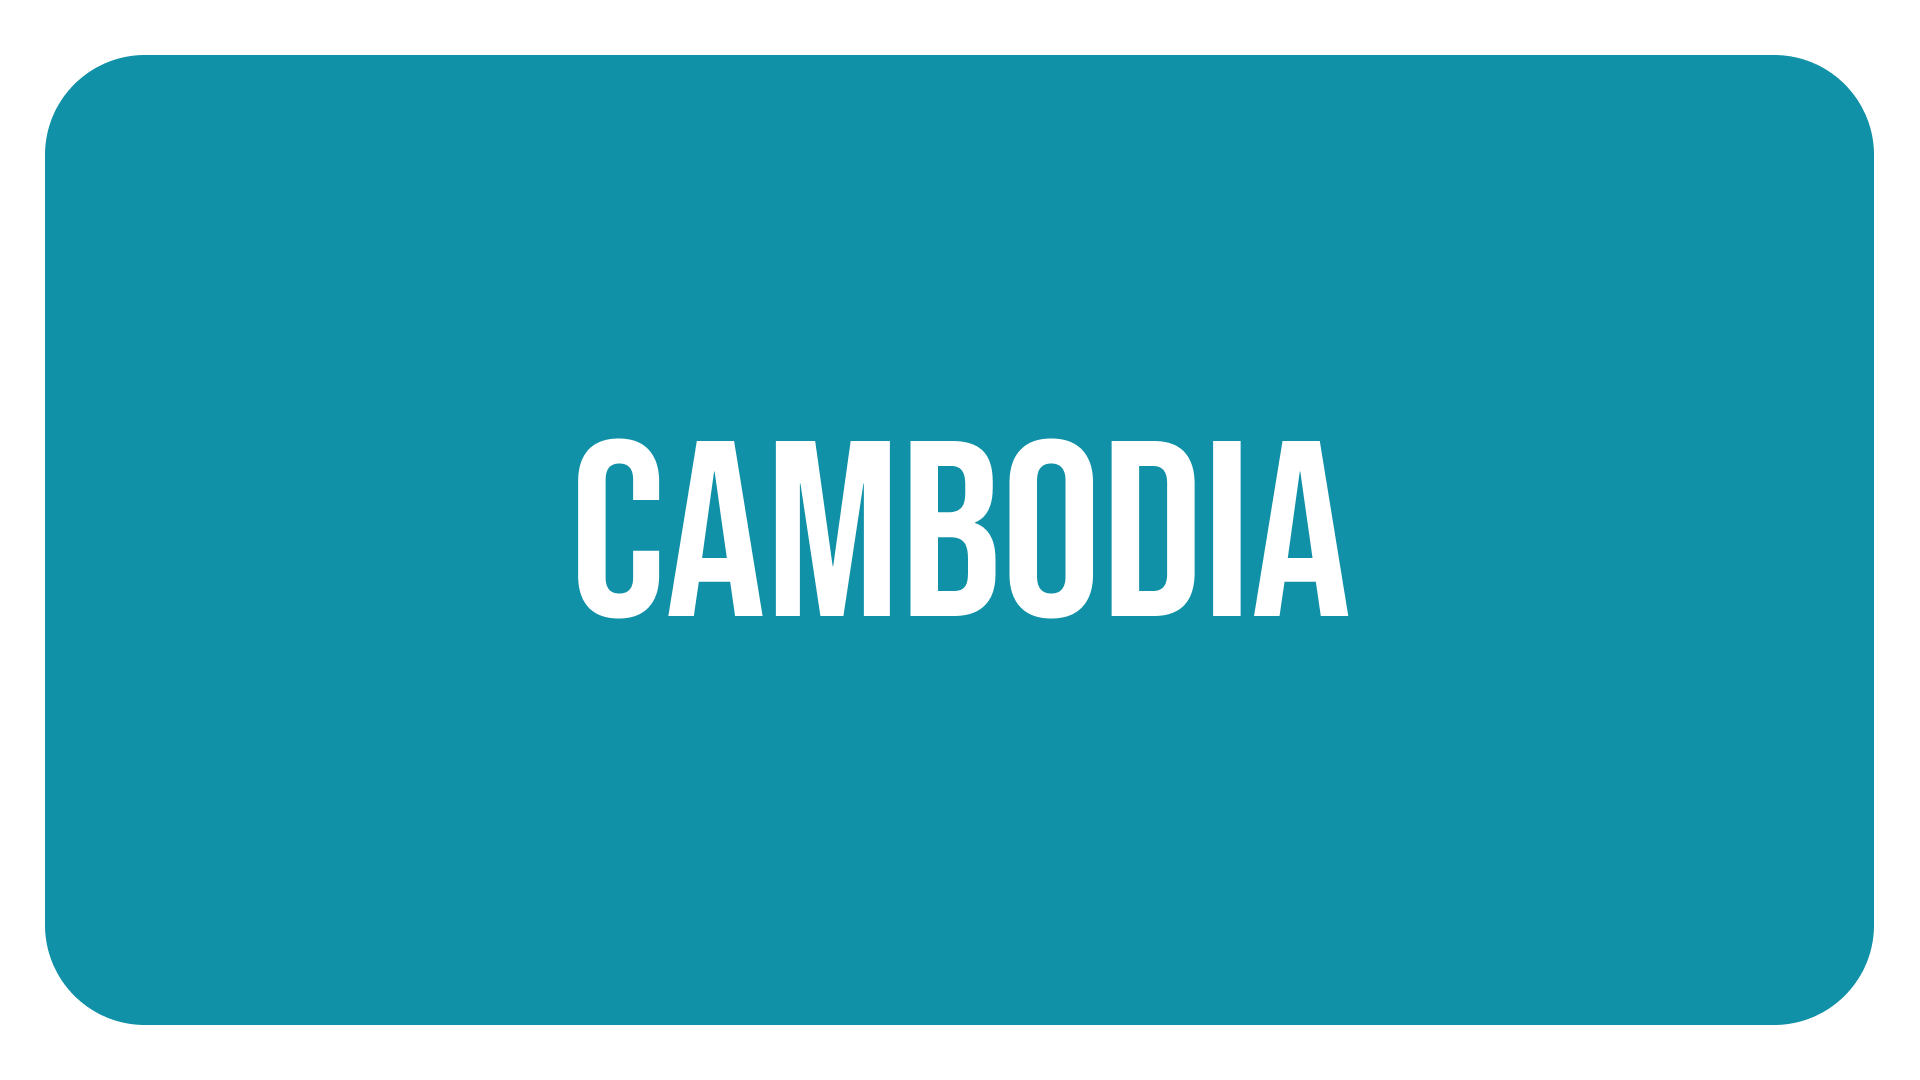 IMAGEN CAMBODIA